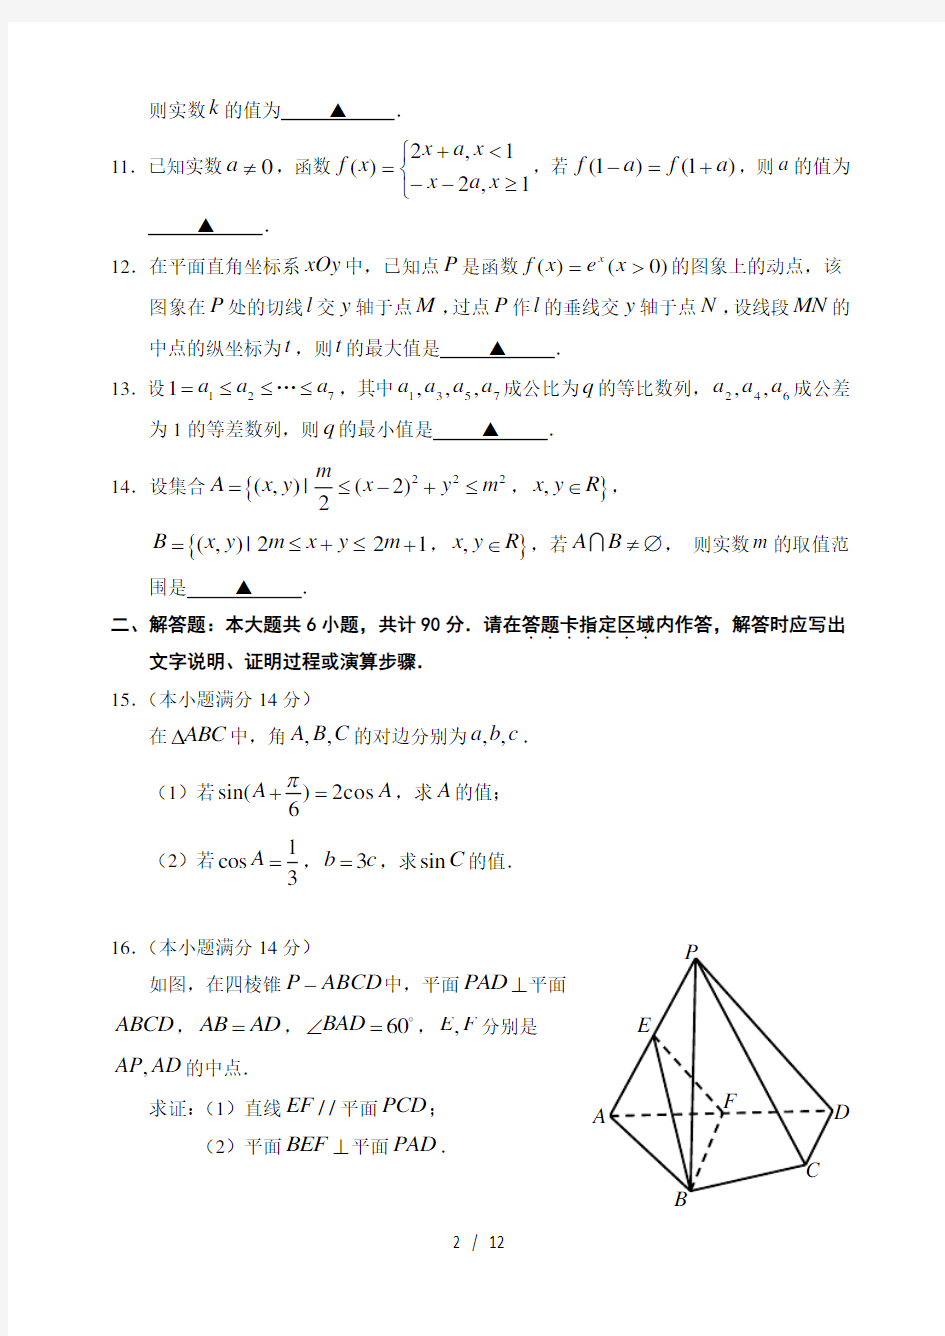 2011年江苏高考数学试题及答案